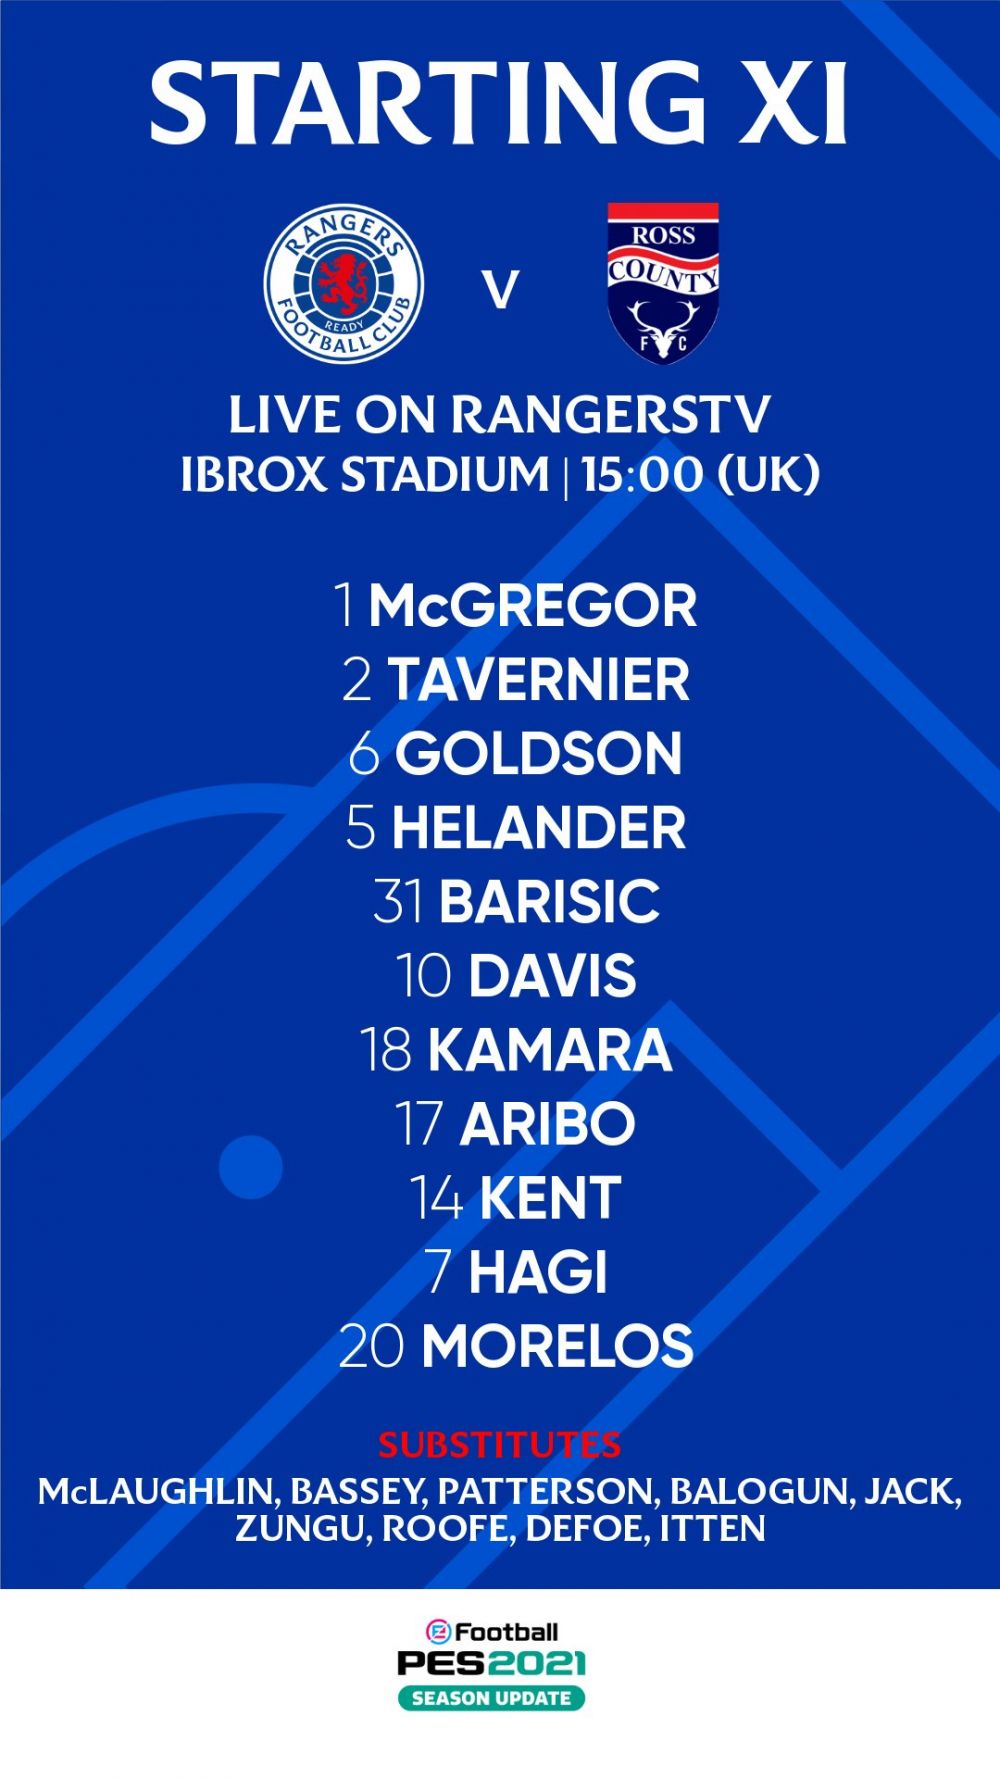 Rangers 5-0 Ross County| Ianis Hagi a dat pasa de gol pentru 4-0! Aici ai toate fazele importante_3